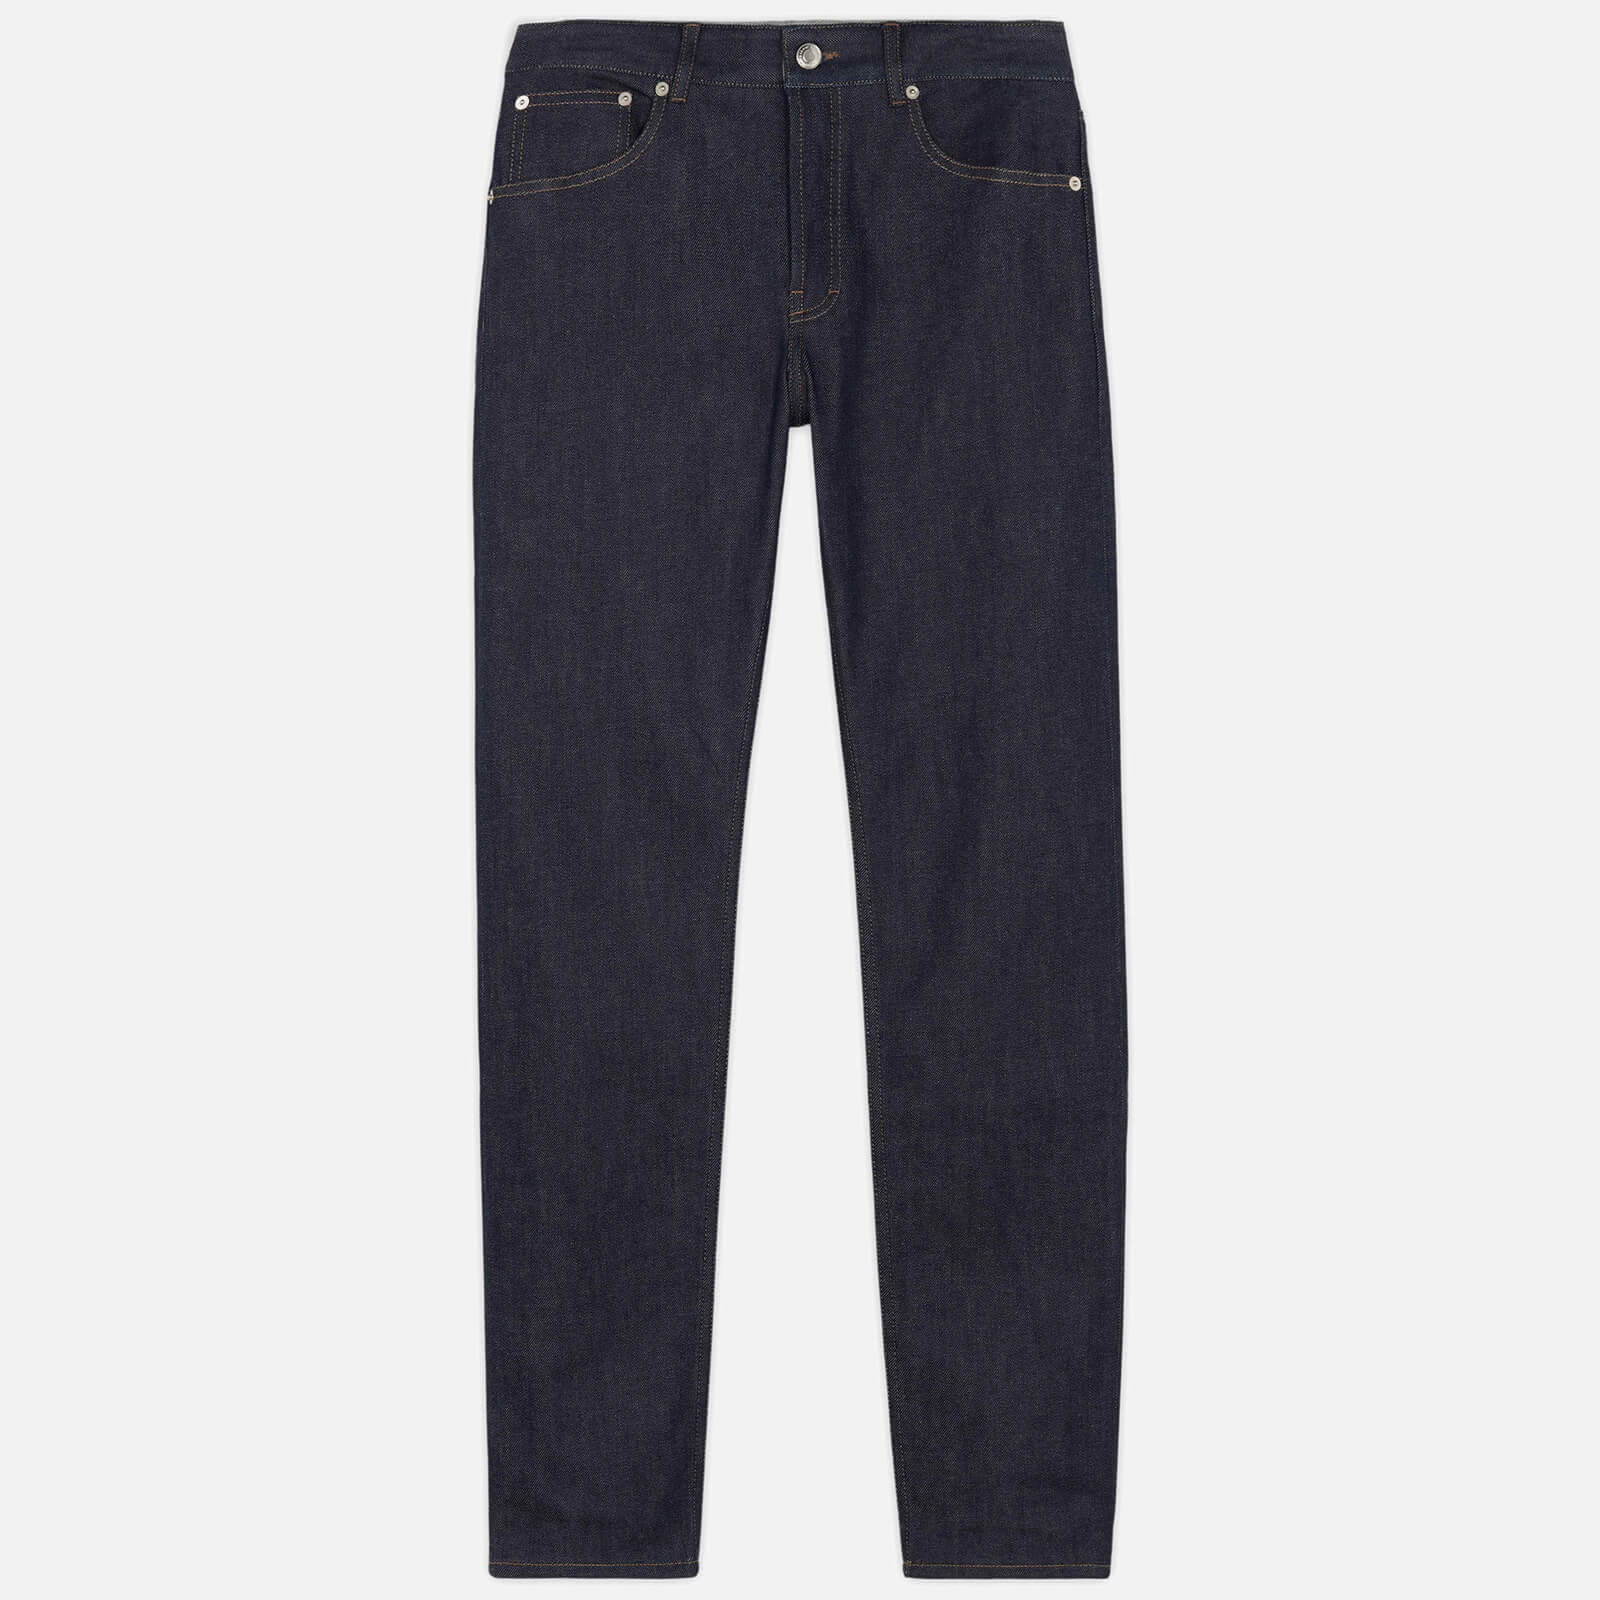 Maison Kitsuné Men's Slim Fit Jeans - Indigo - W28